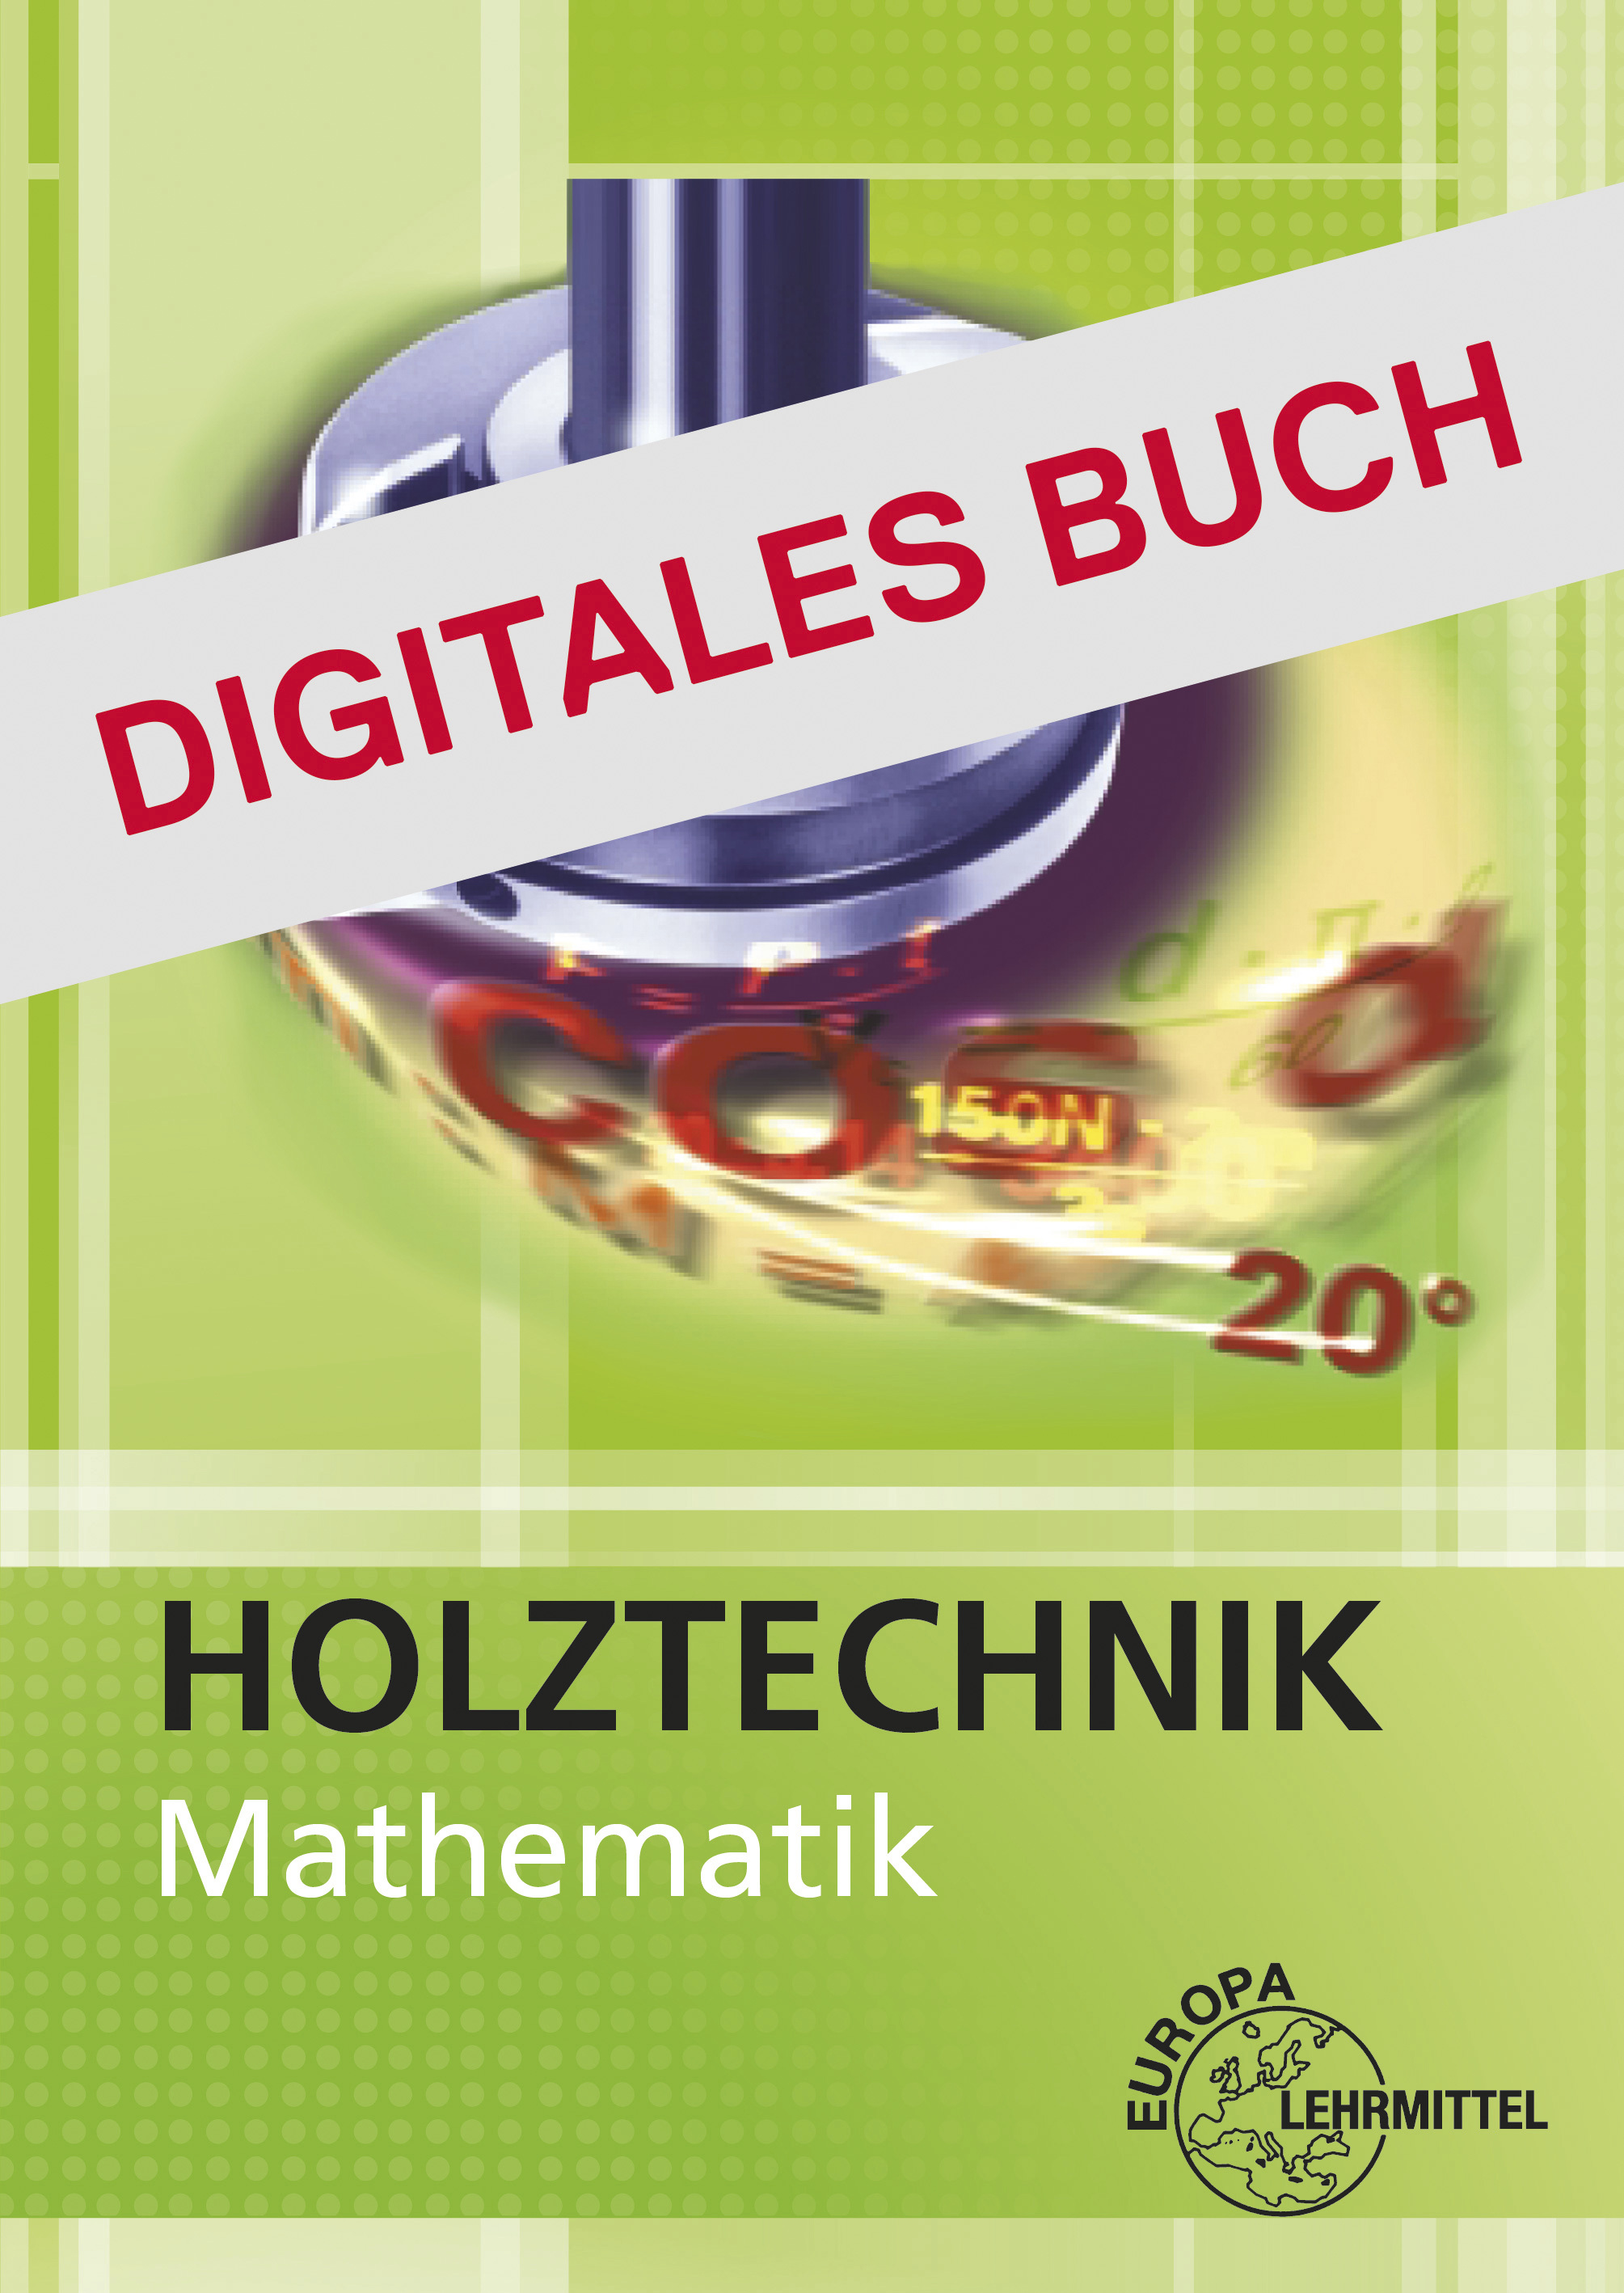 Mathematik Holztechnik - Digitales Buch